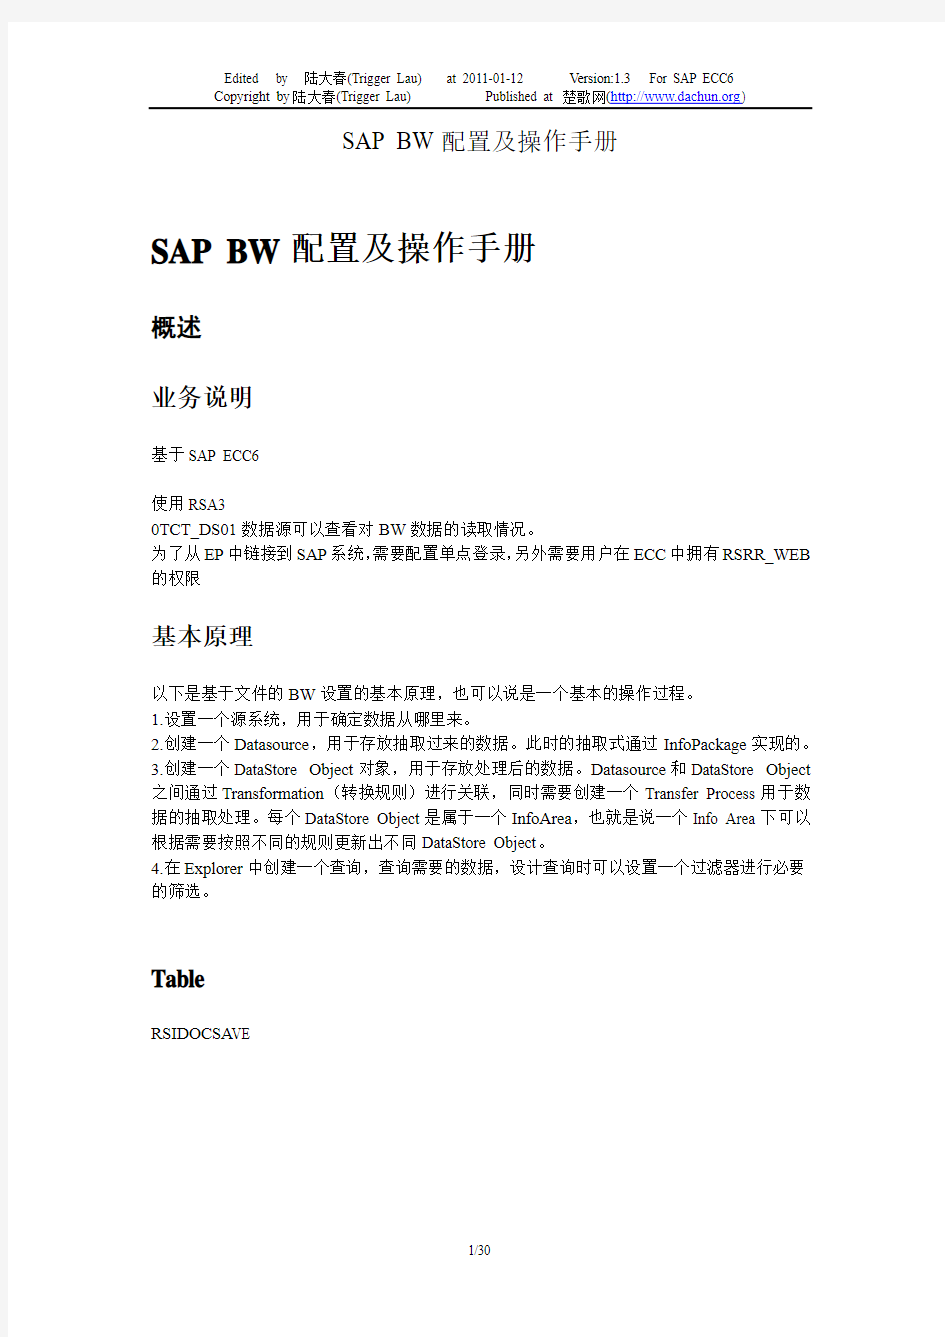 SAP_BW-SAP_BW配置及操作手册-V1.3-trigger_lau